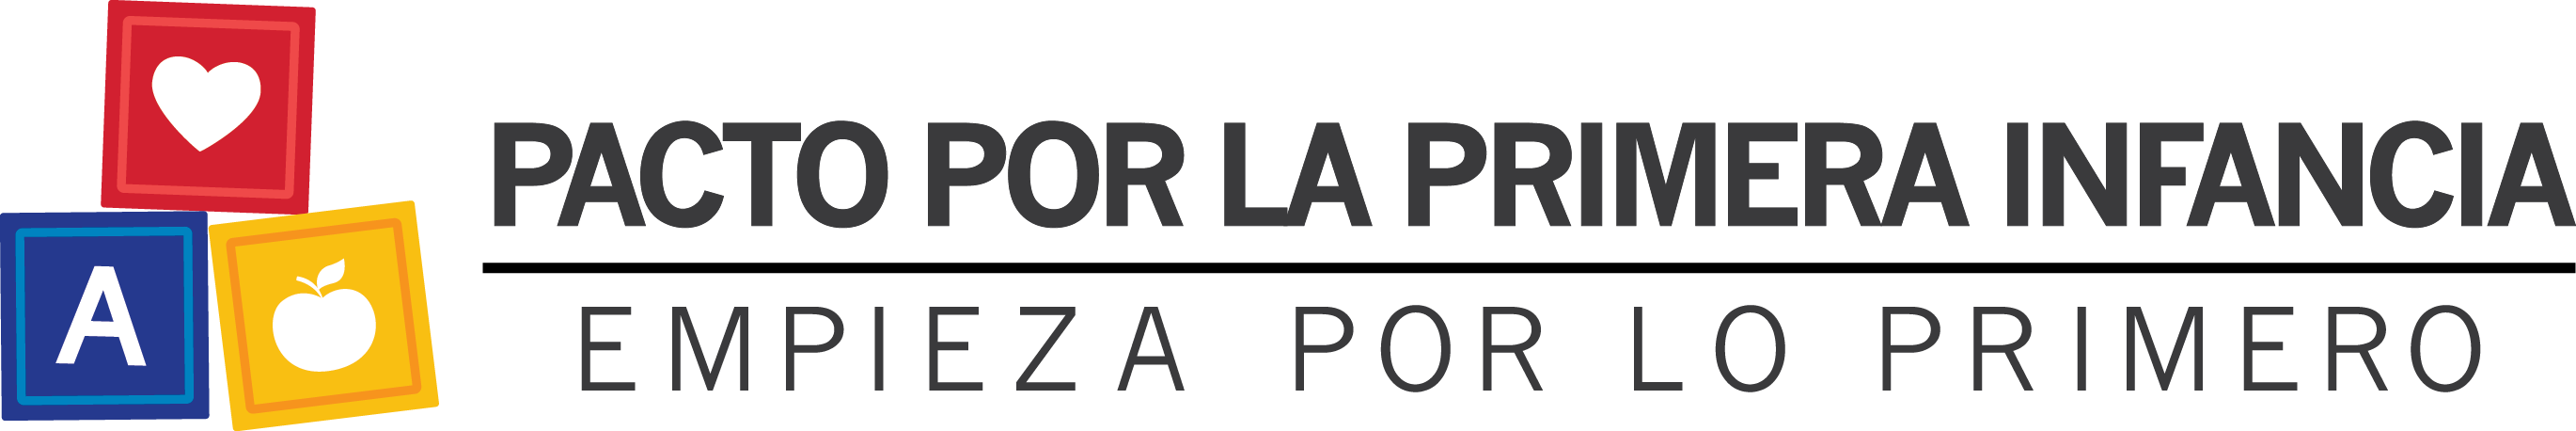 Nuevo logo pacto